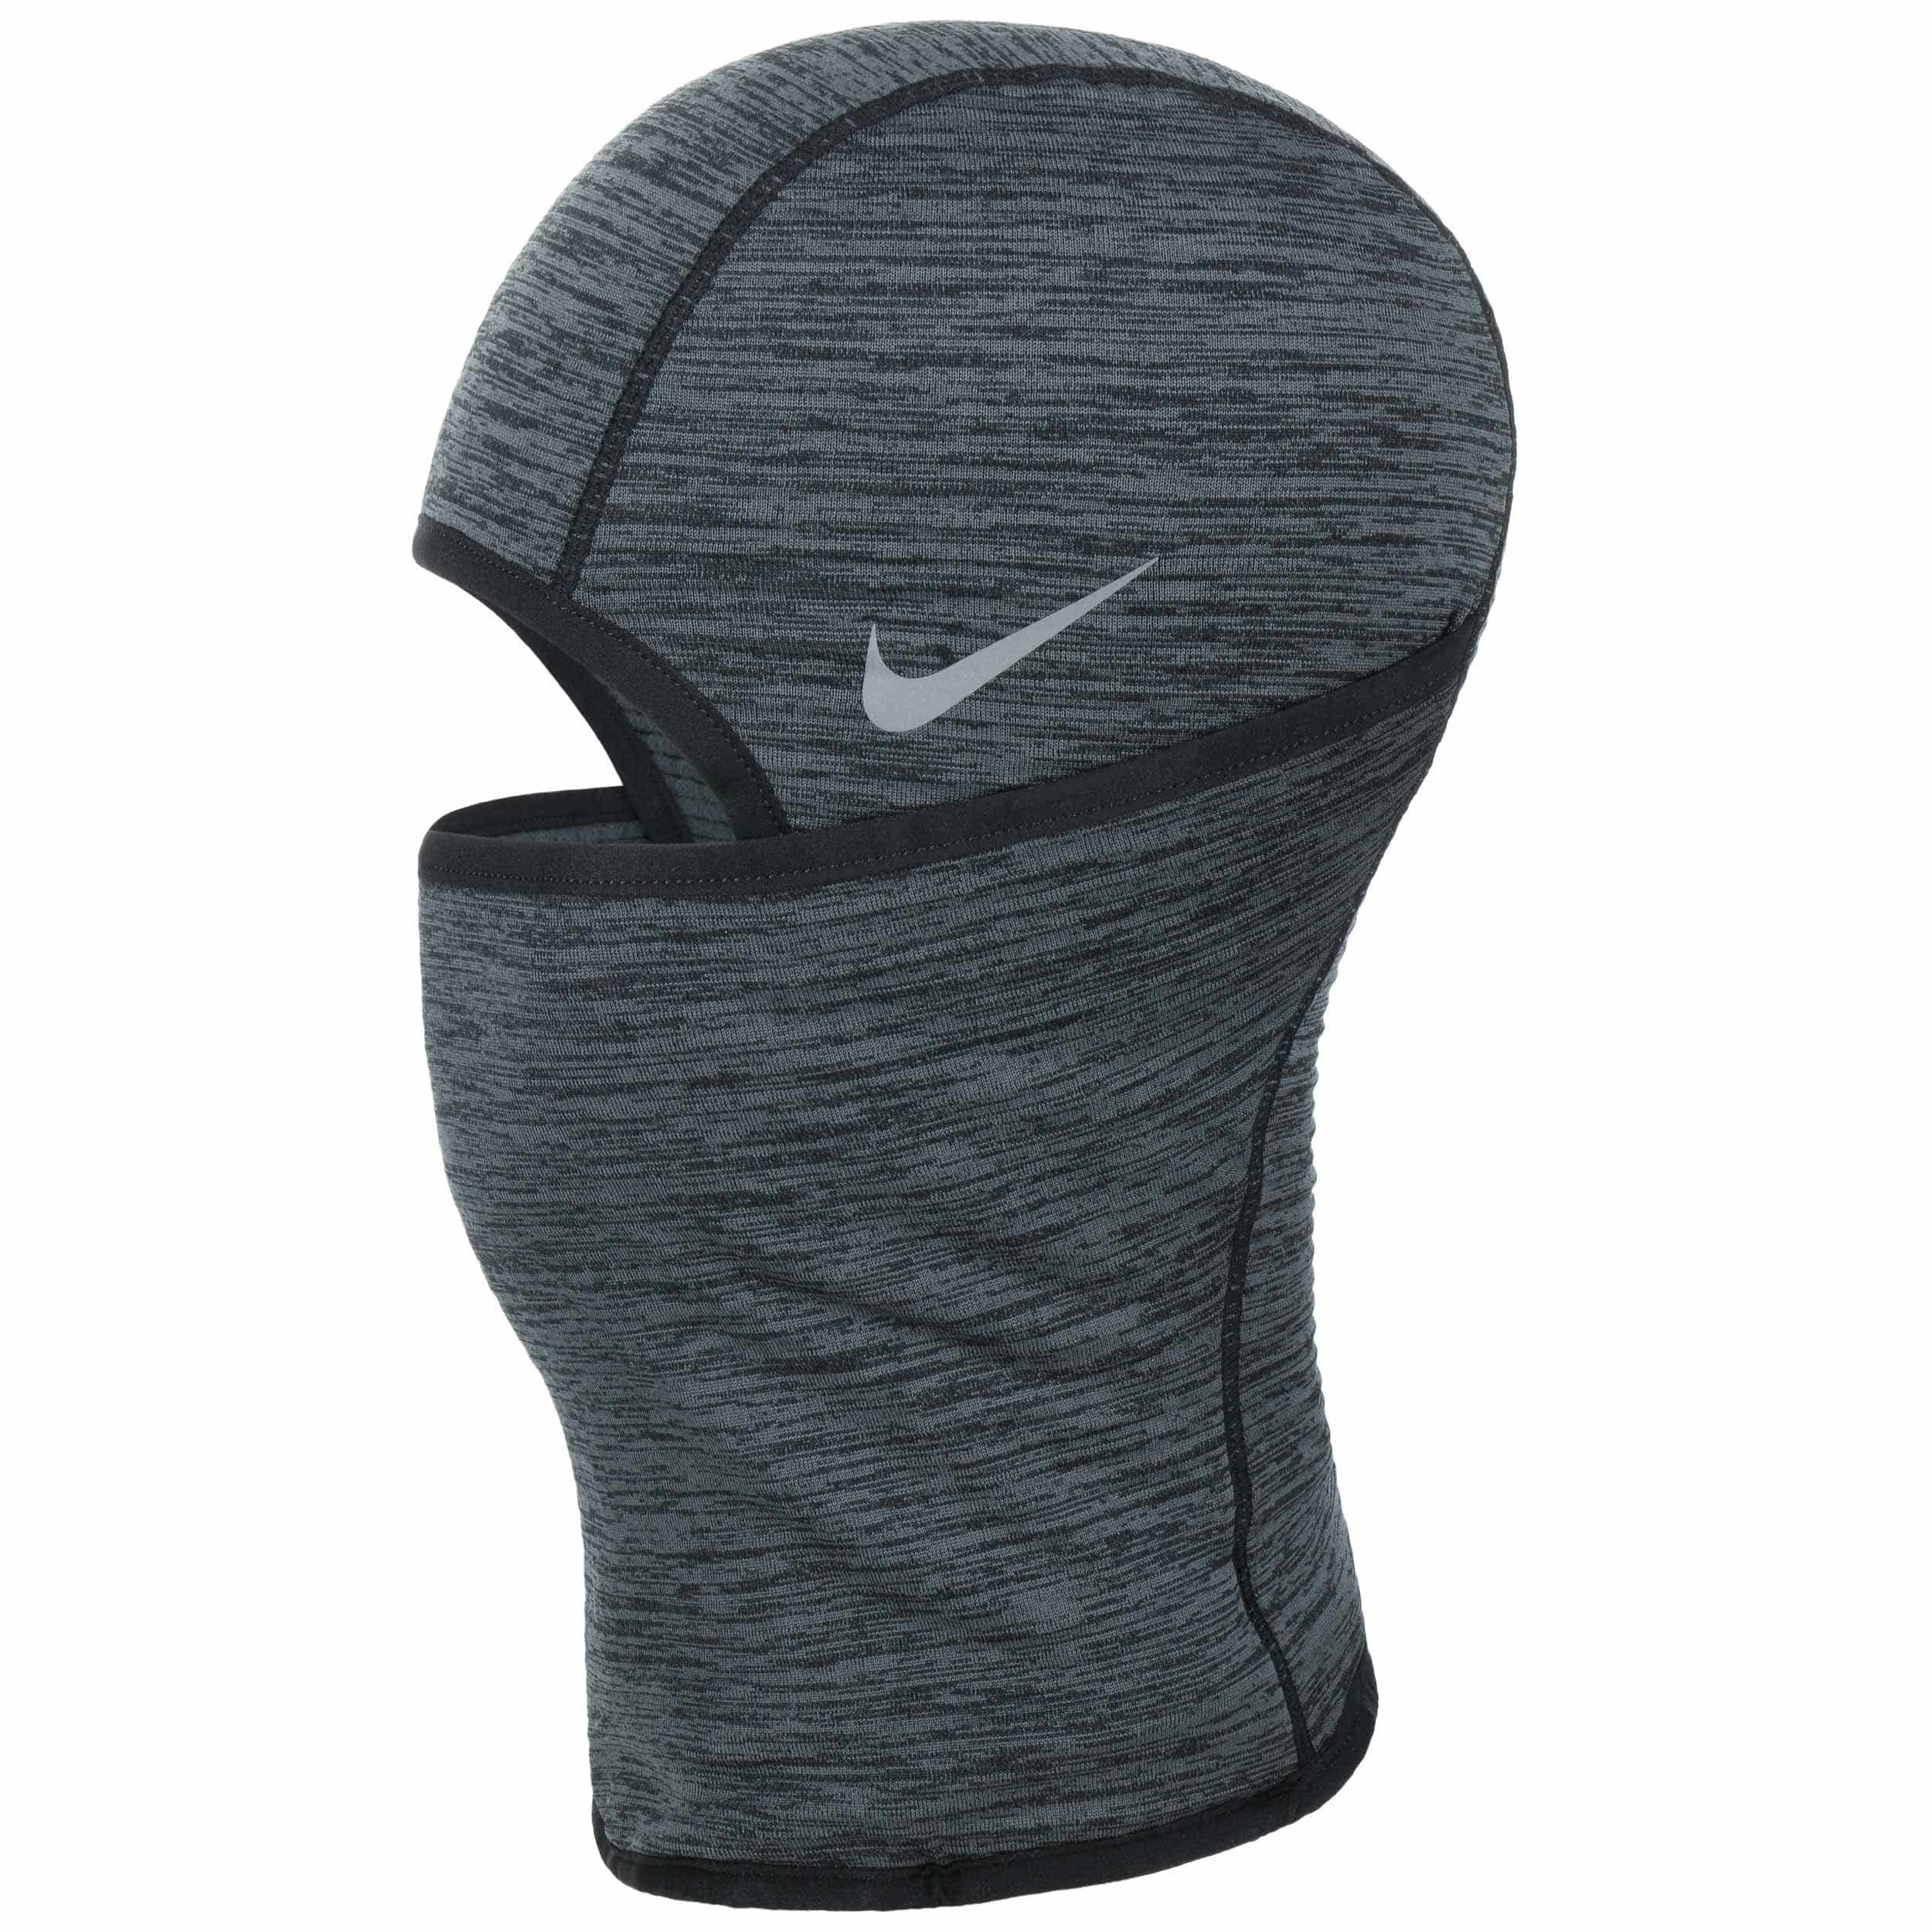 Cagoule Therma Sphere Hood by Nike - 39,95 €